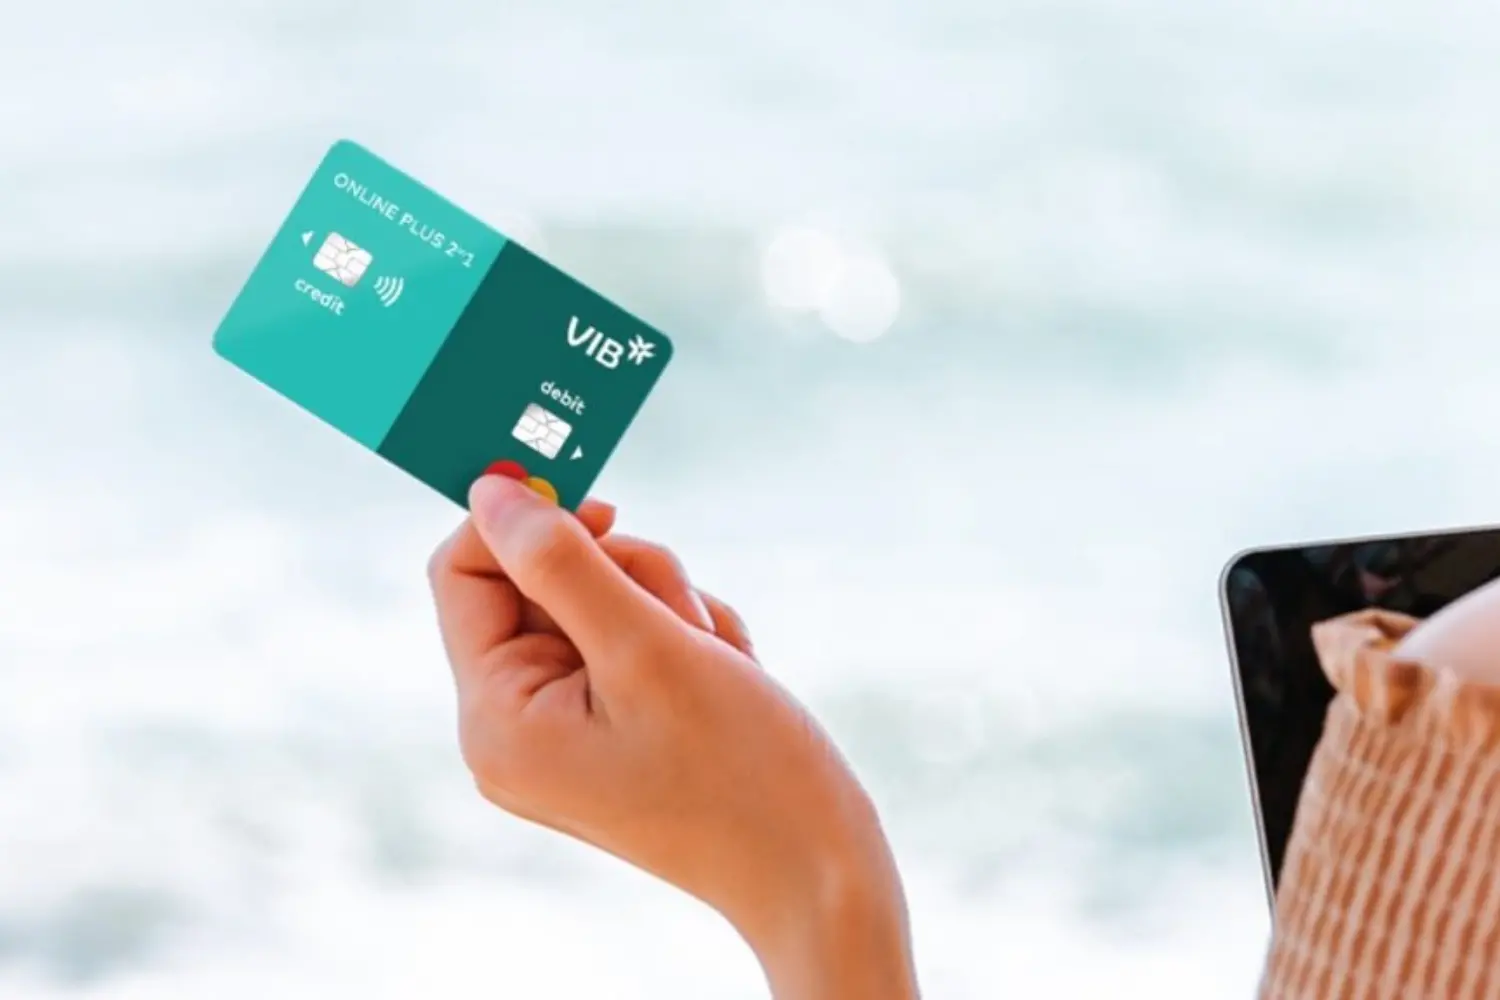 Thẻ tín dụng quốc tế cho phép người dùng sử dụng được hầu hết trên các quốc gia